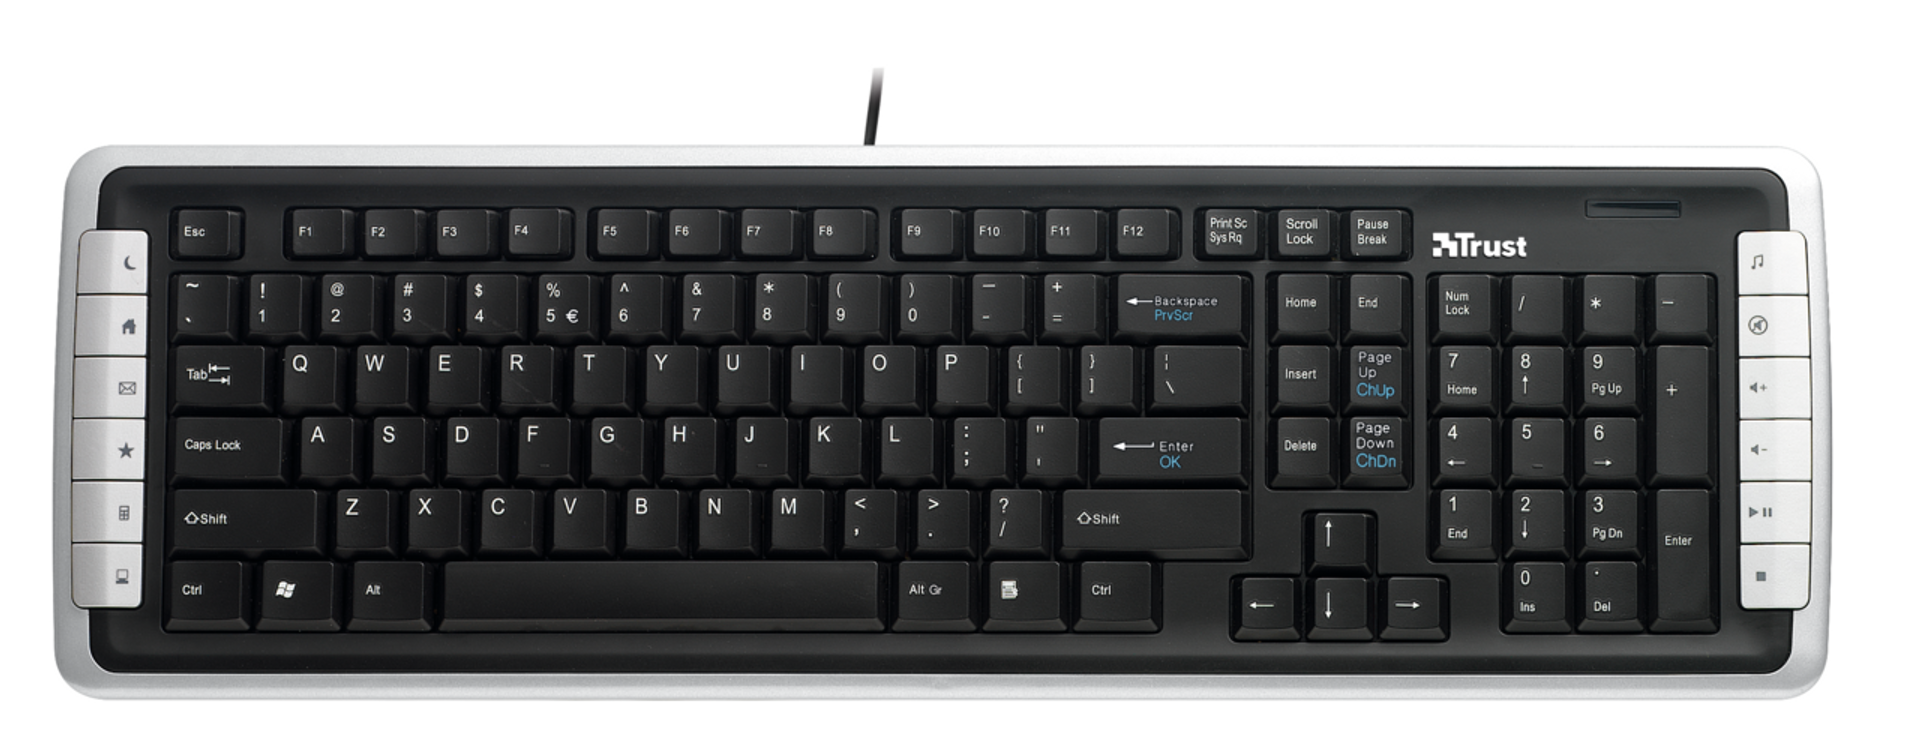 Slimline Keyboard KB-1350D RU-Top